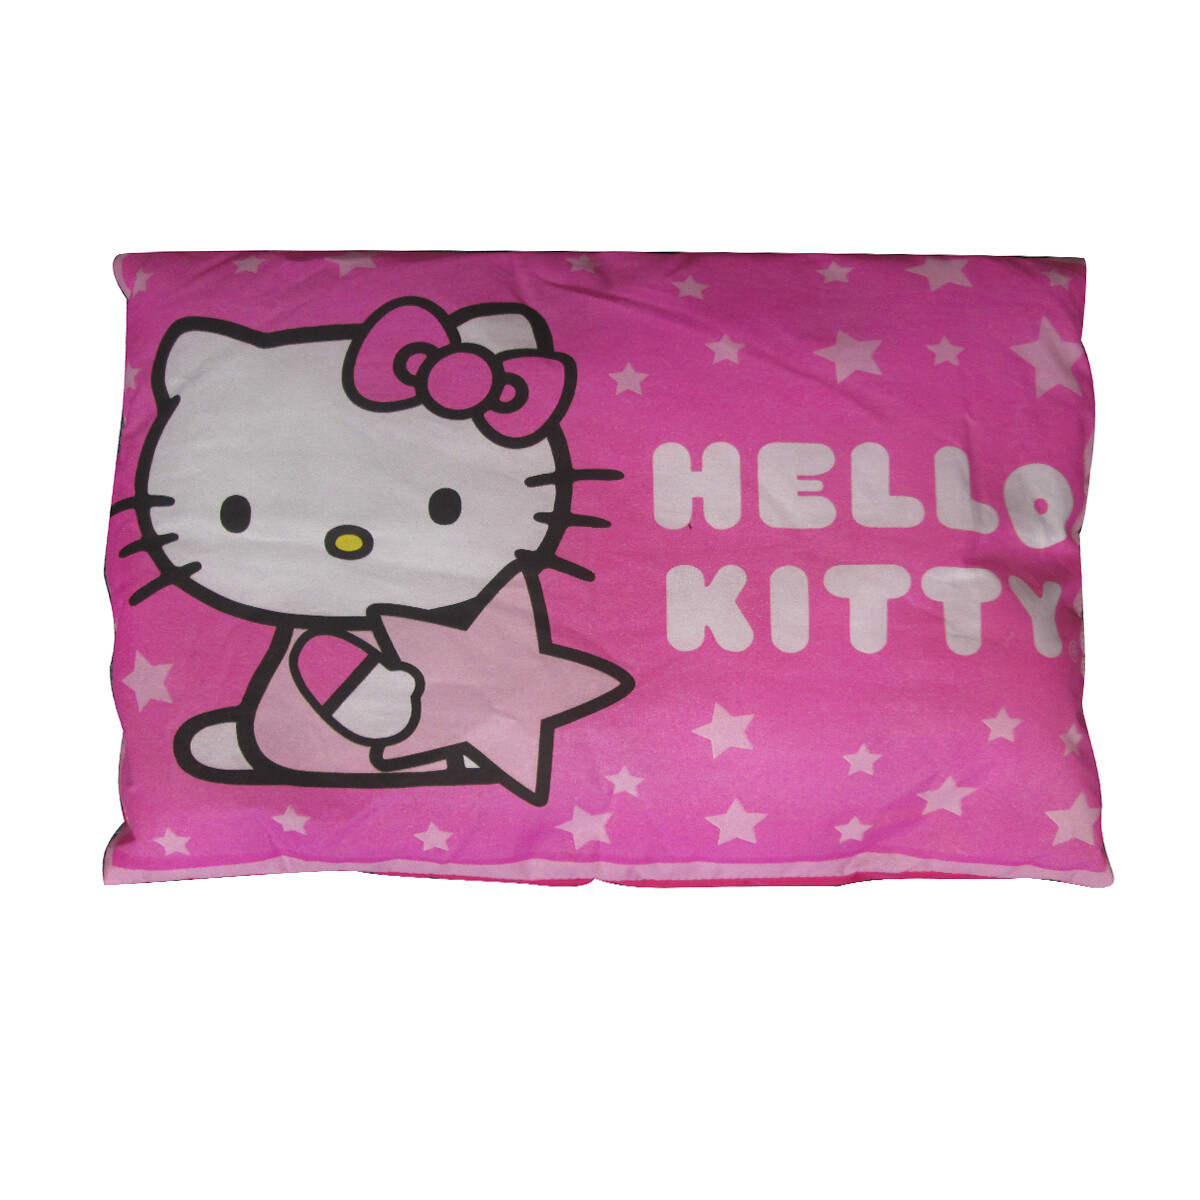 Almohada de Hello Kitty 30 cm x 40 cm 